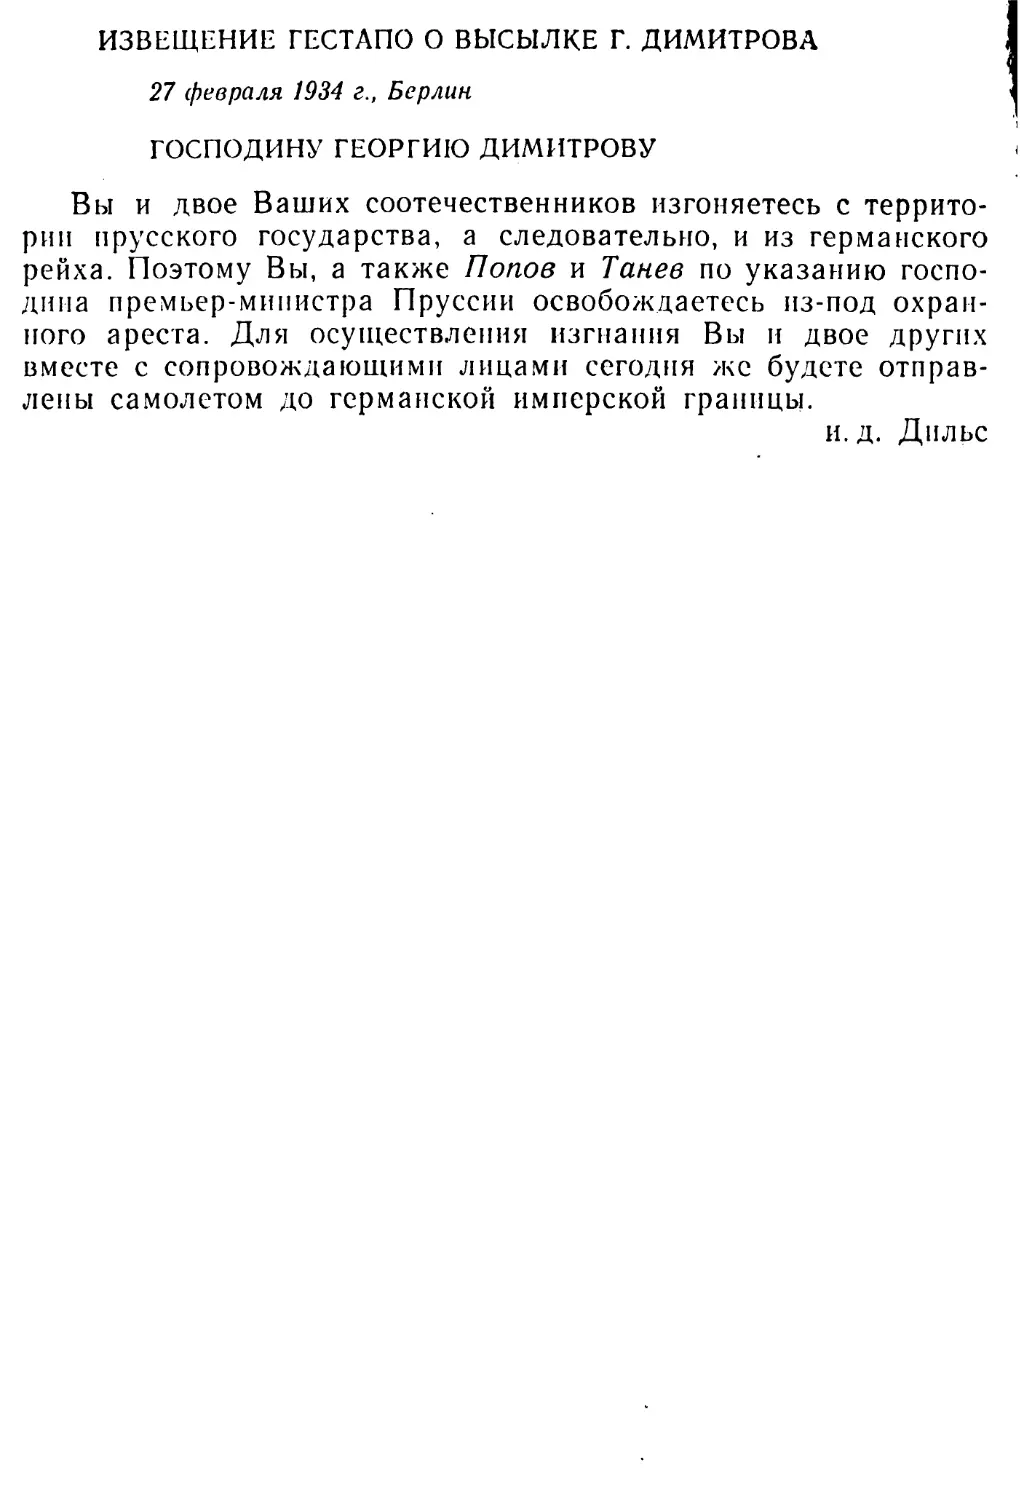 Извещение гестапо о высылке Георгия Димитрова. 27 февриля 1931 г